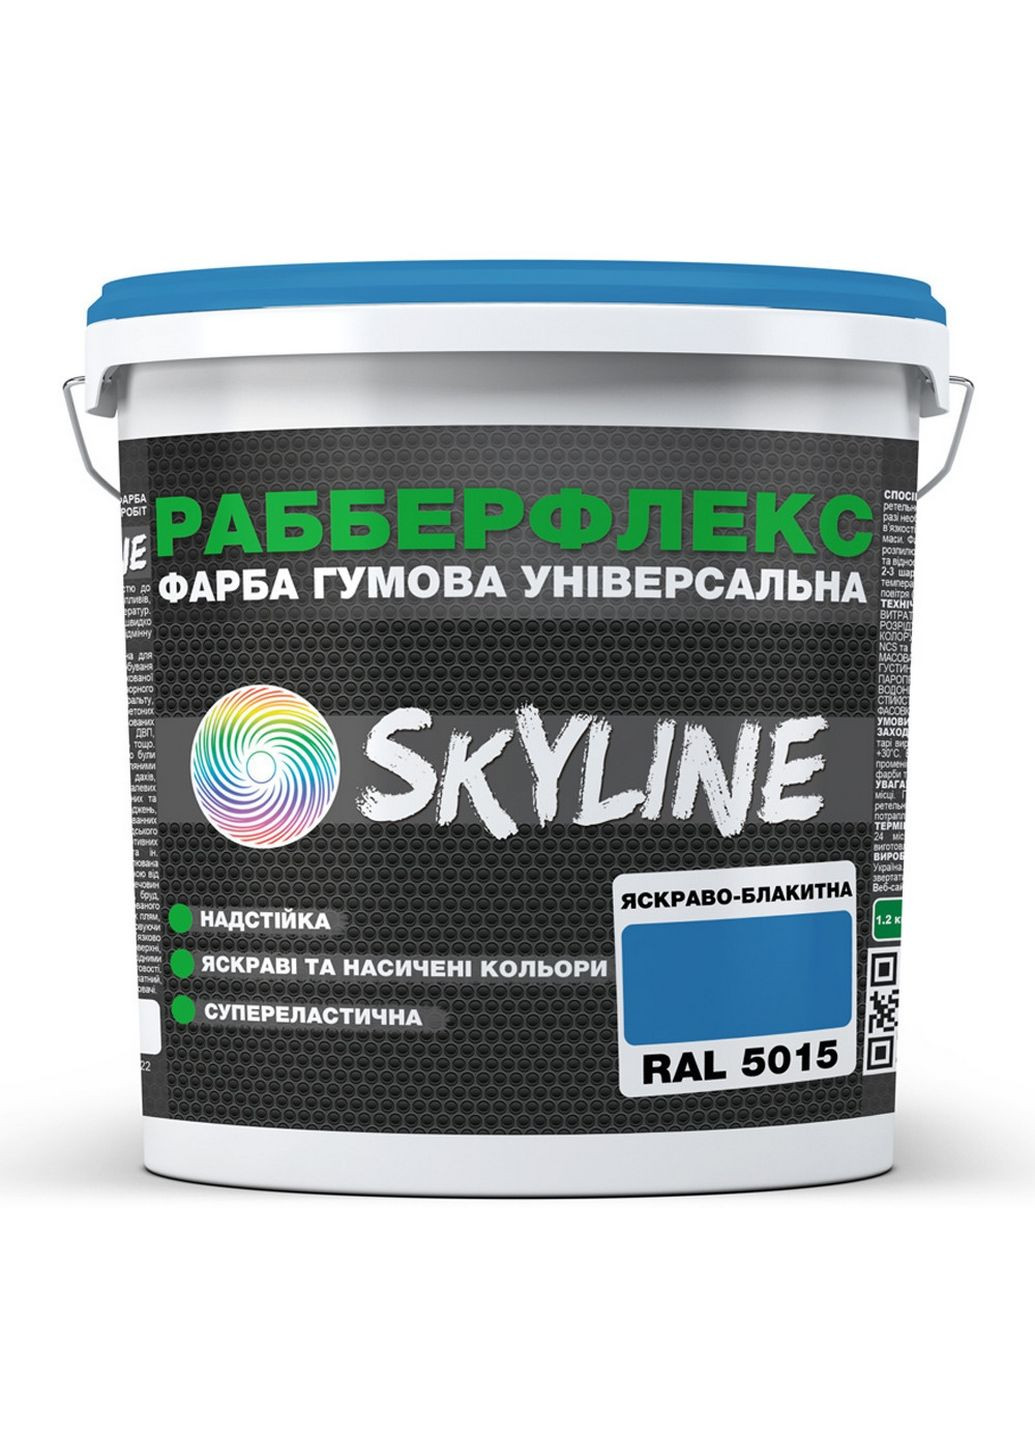 Краска резиновая суперэластичная сверхстойкая «РабберФлекс» 6 кг SkyLine (289462252)